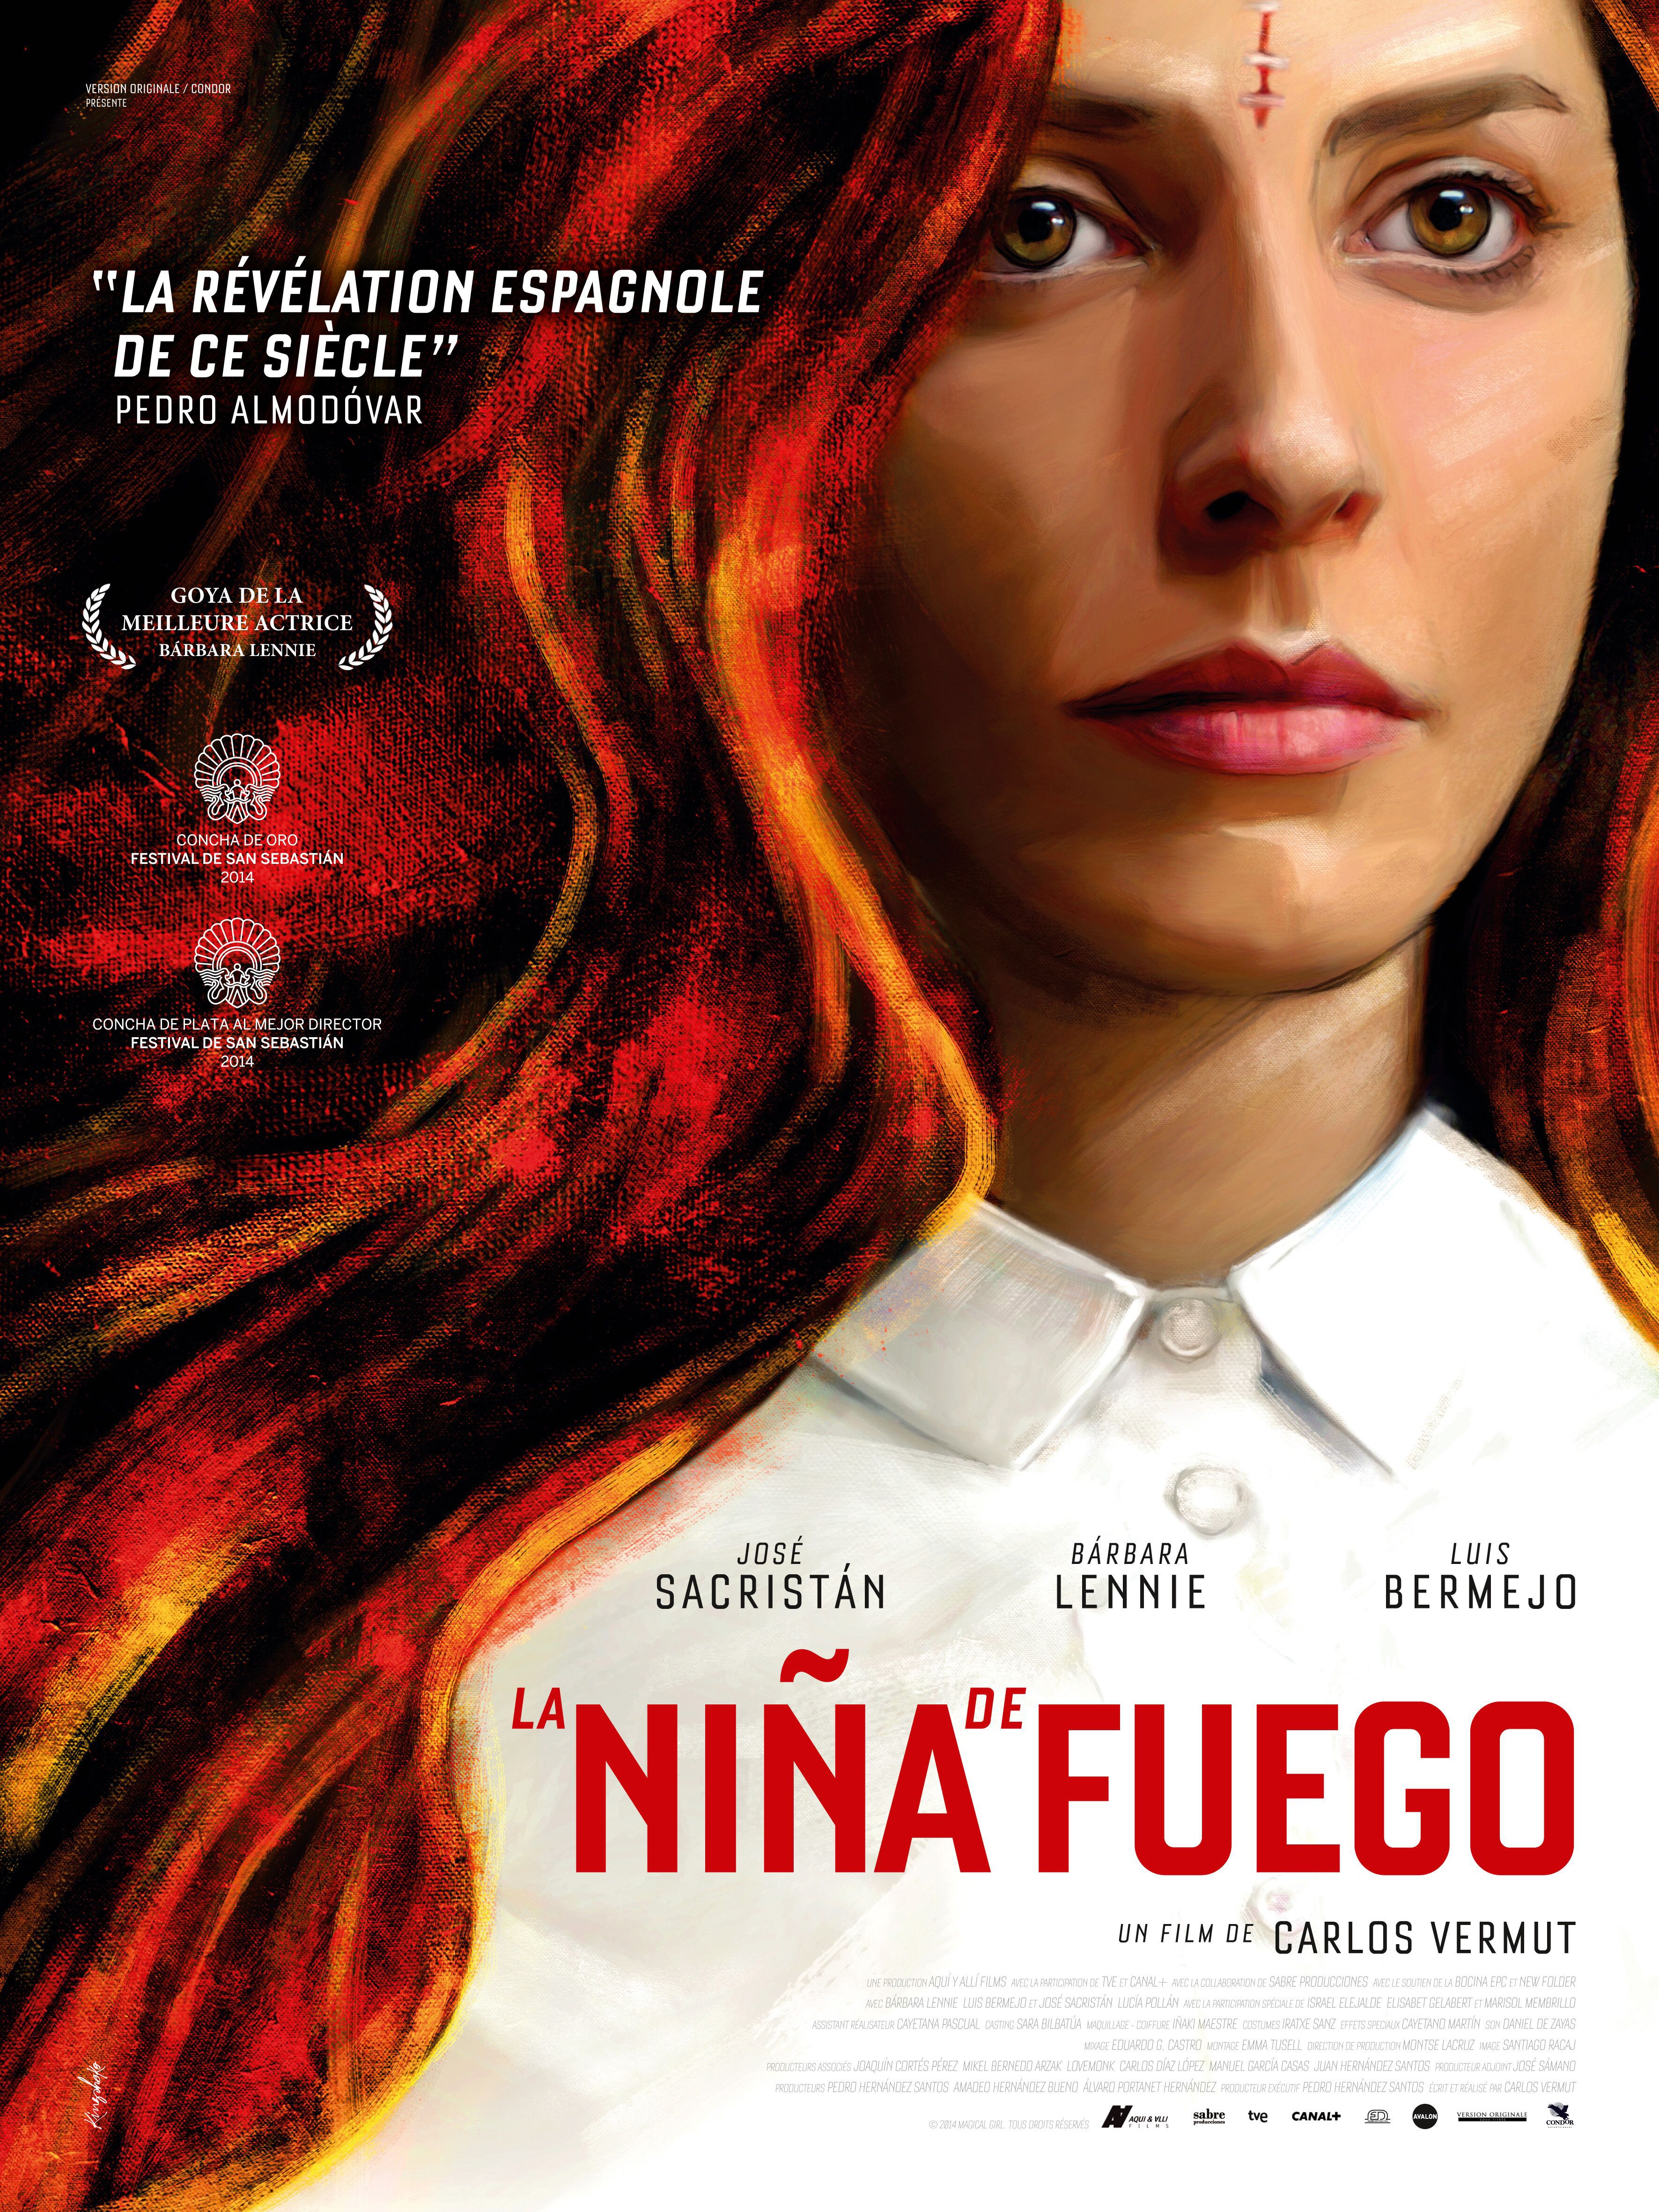 La Niña de fuego - Film (2014) streaming VF gratuit complet